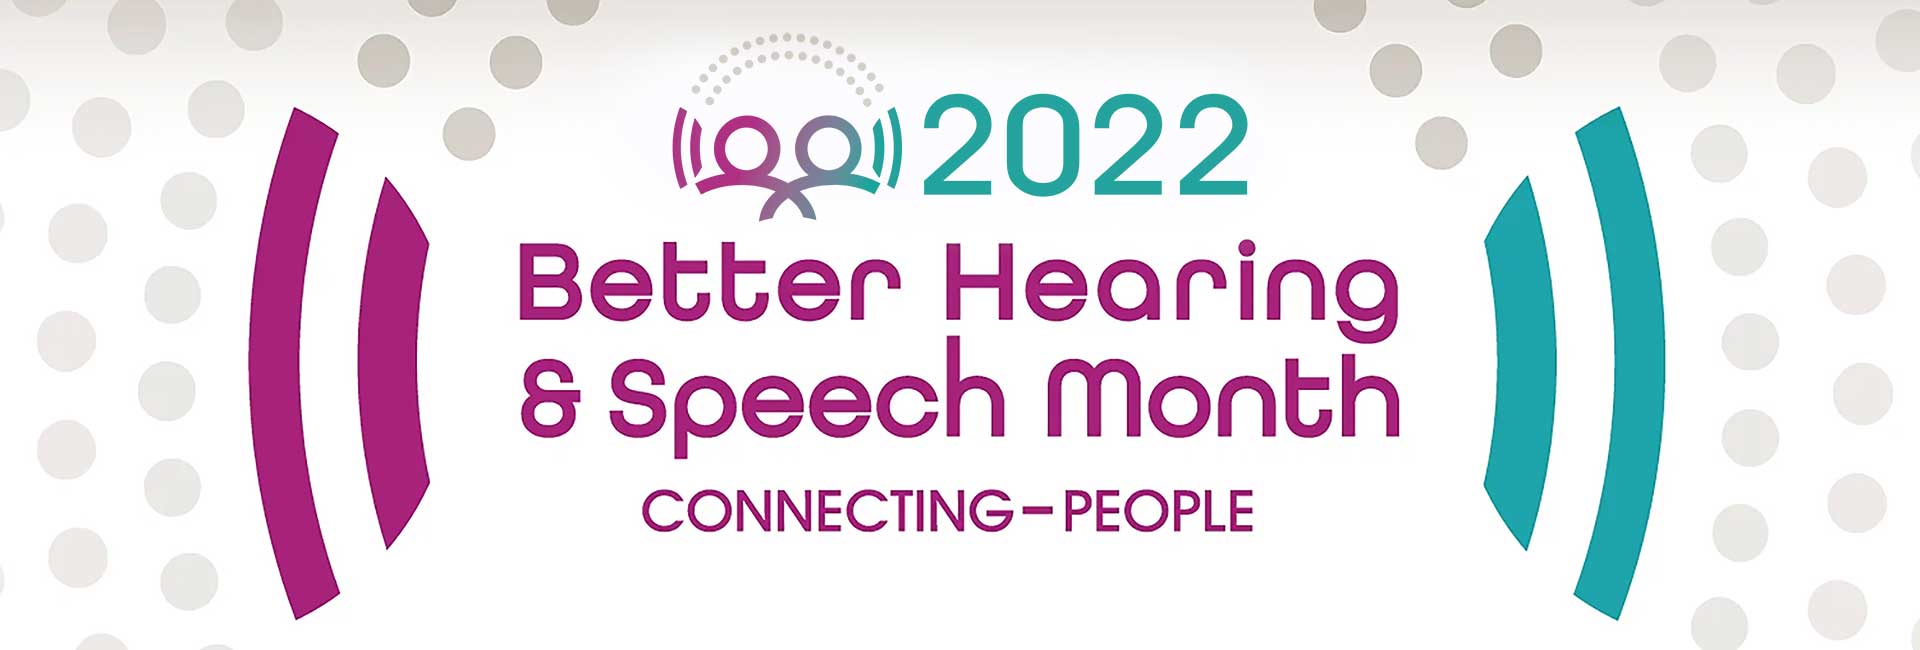 Better Hearing & Speech Month banner